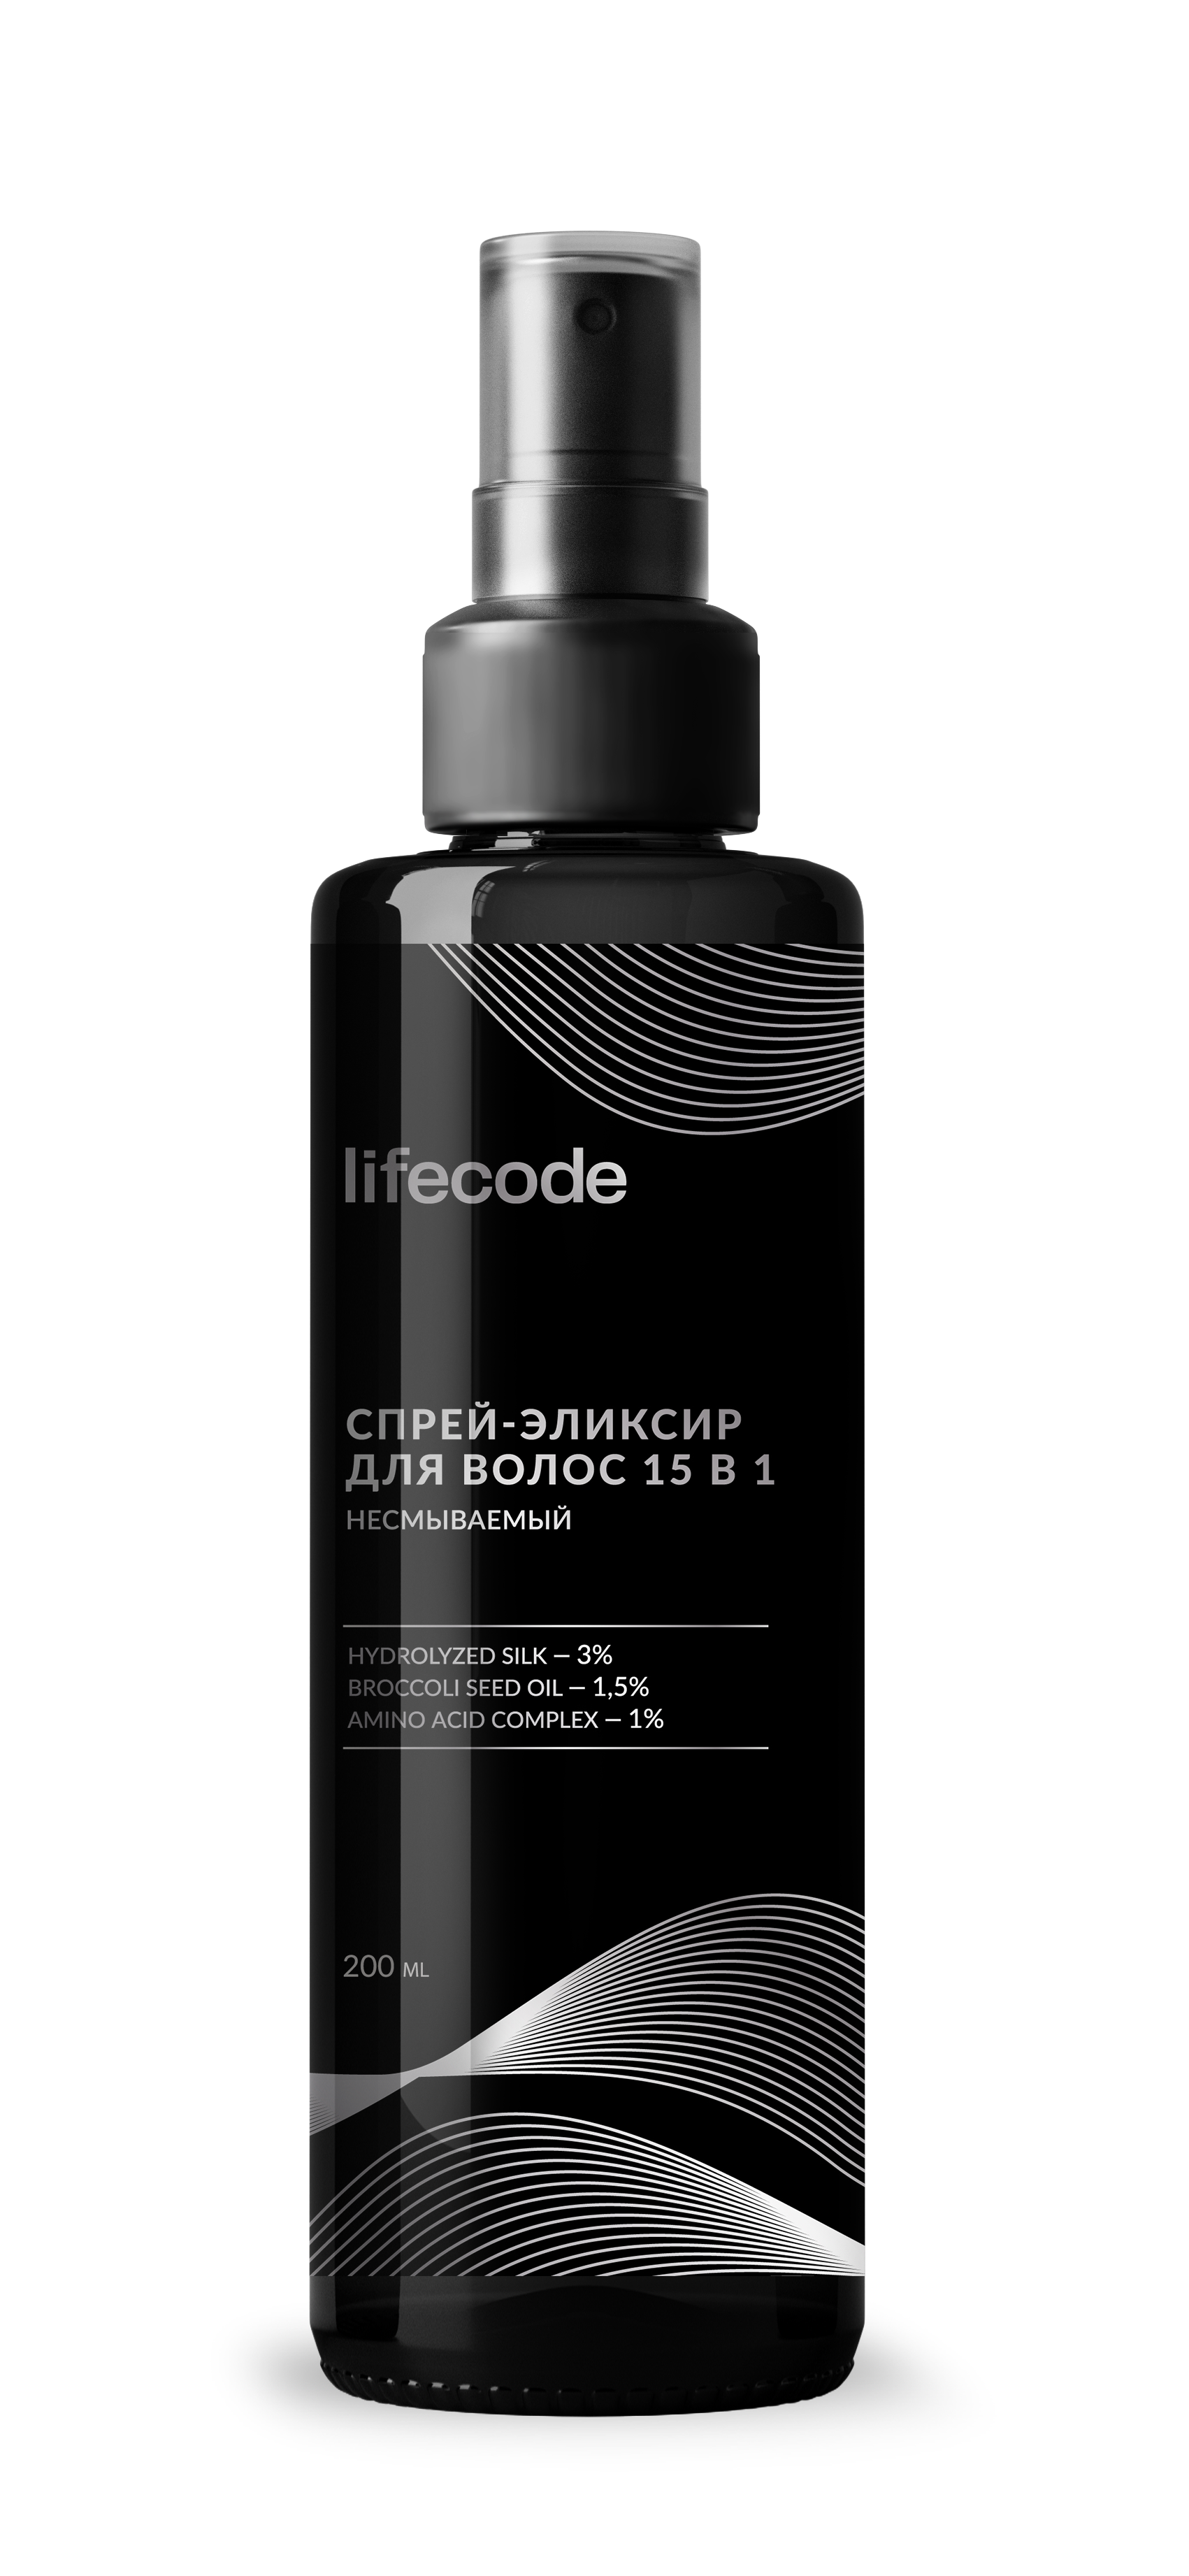 Спрей для волос Lifecode 15 в 1, многофункциональный, 200 мл